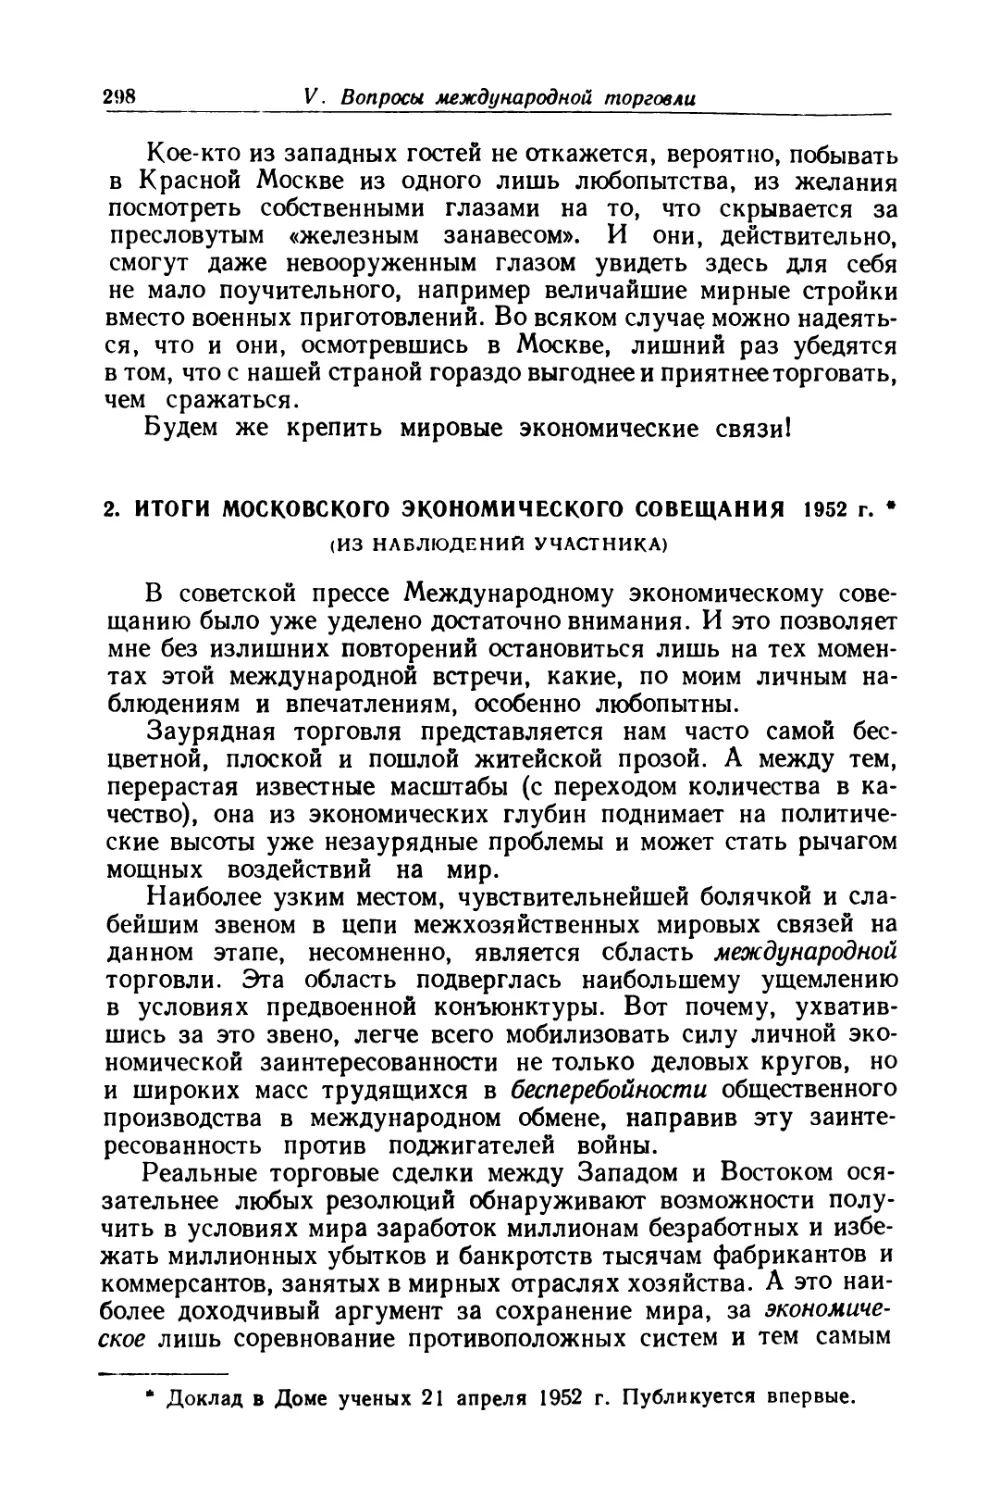 2.  Итоги  Московского  экономического  совещания  1952 г